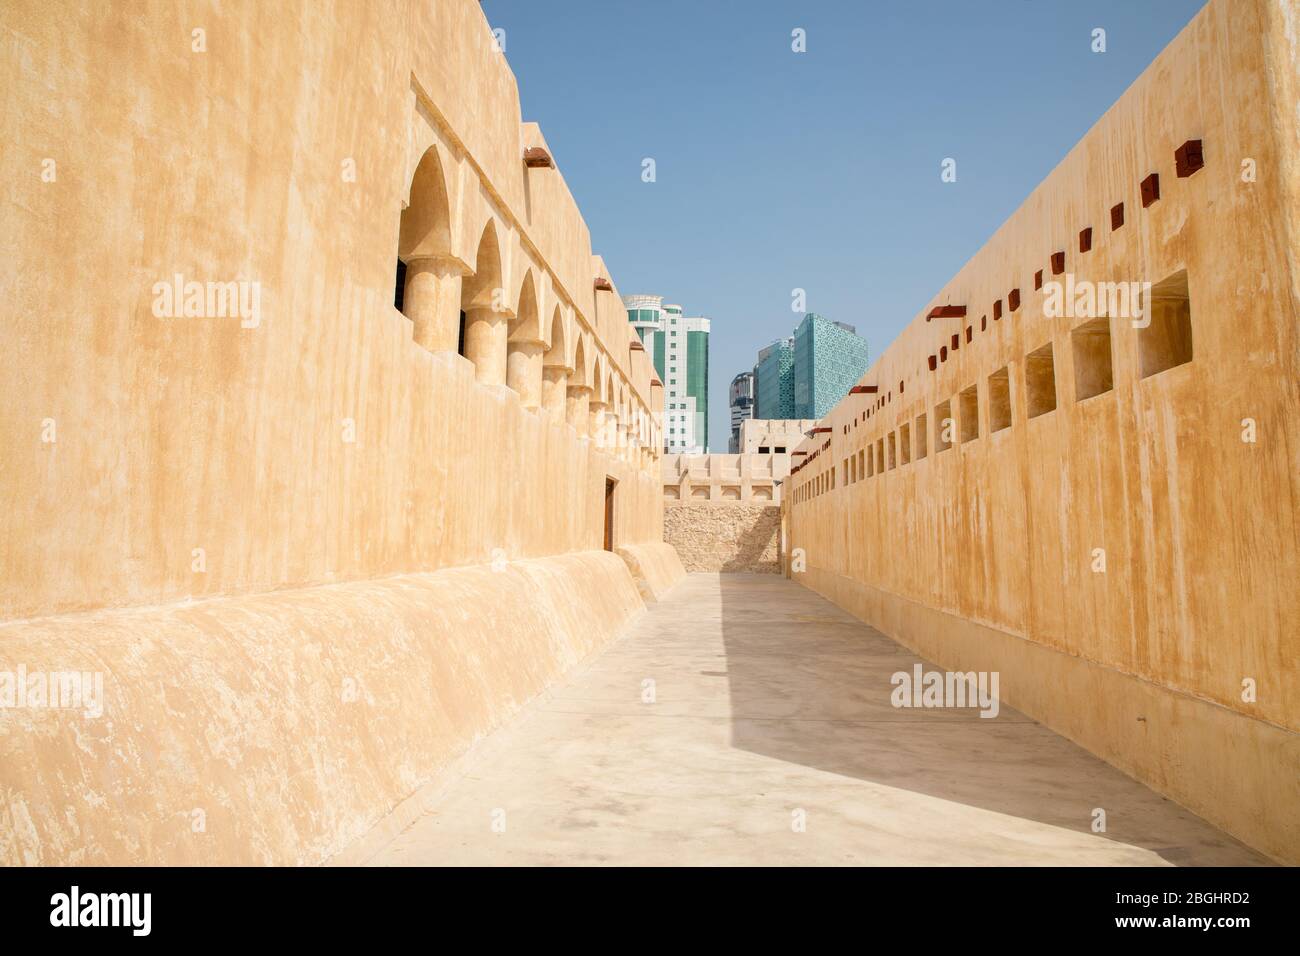 Doha, Katar - 2. März 2020: Innenhof der Domes Moschee Doha, wunderschöne islamische Kultstätte Wahrzeichen, sandige Wände und blauer Himmel Stockfoto